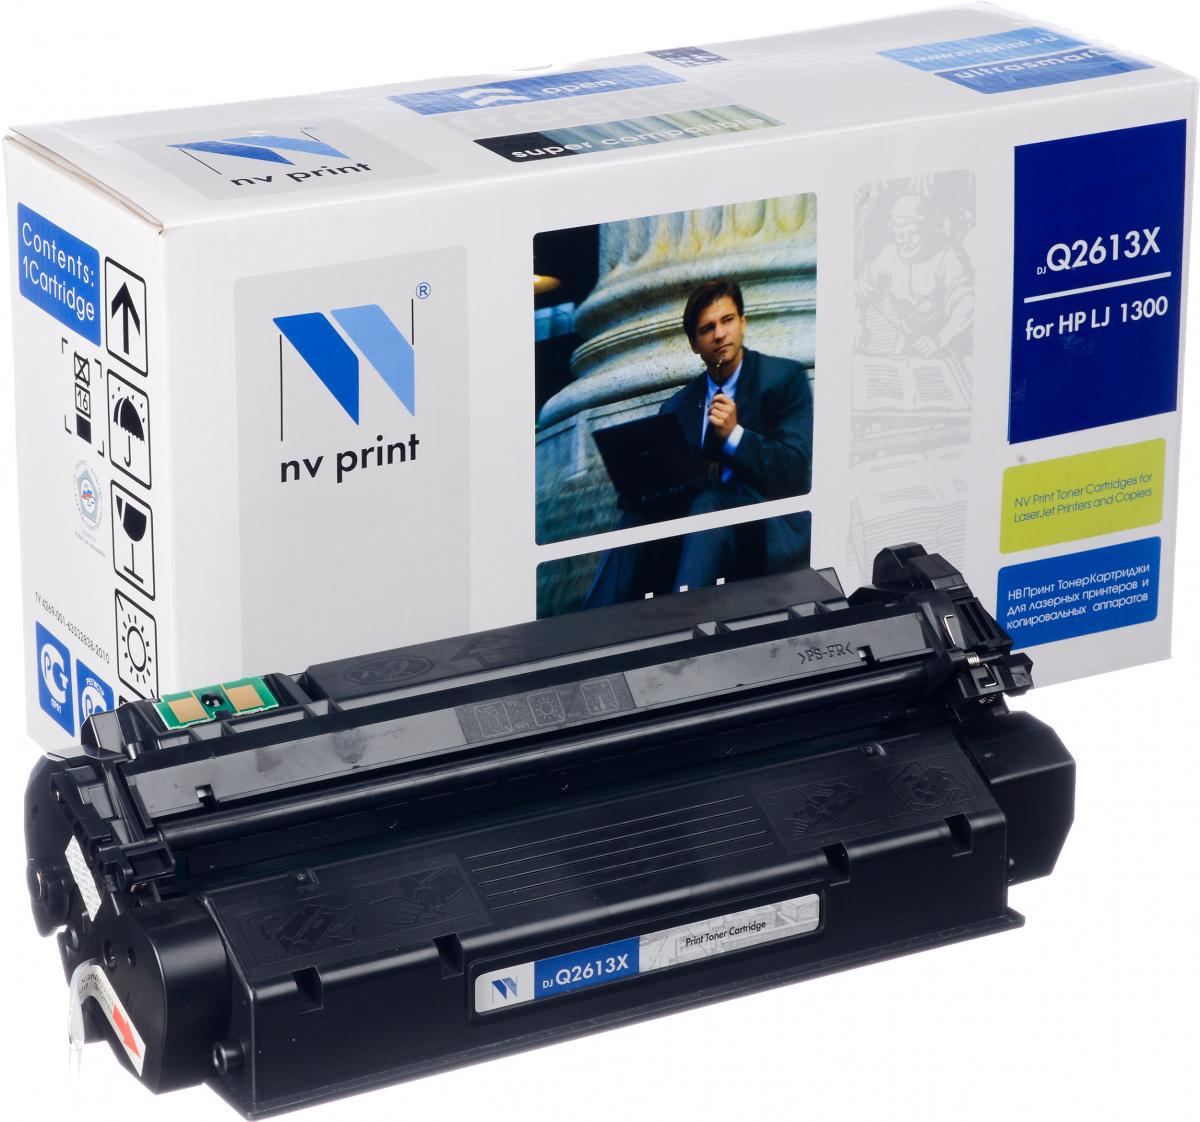   NV-Print  HP LJ 1300, Q2613X